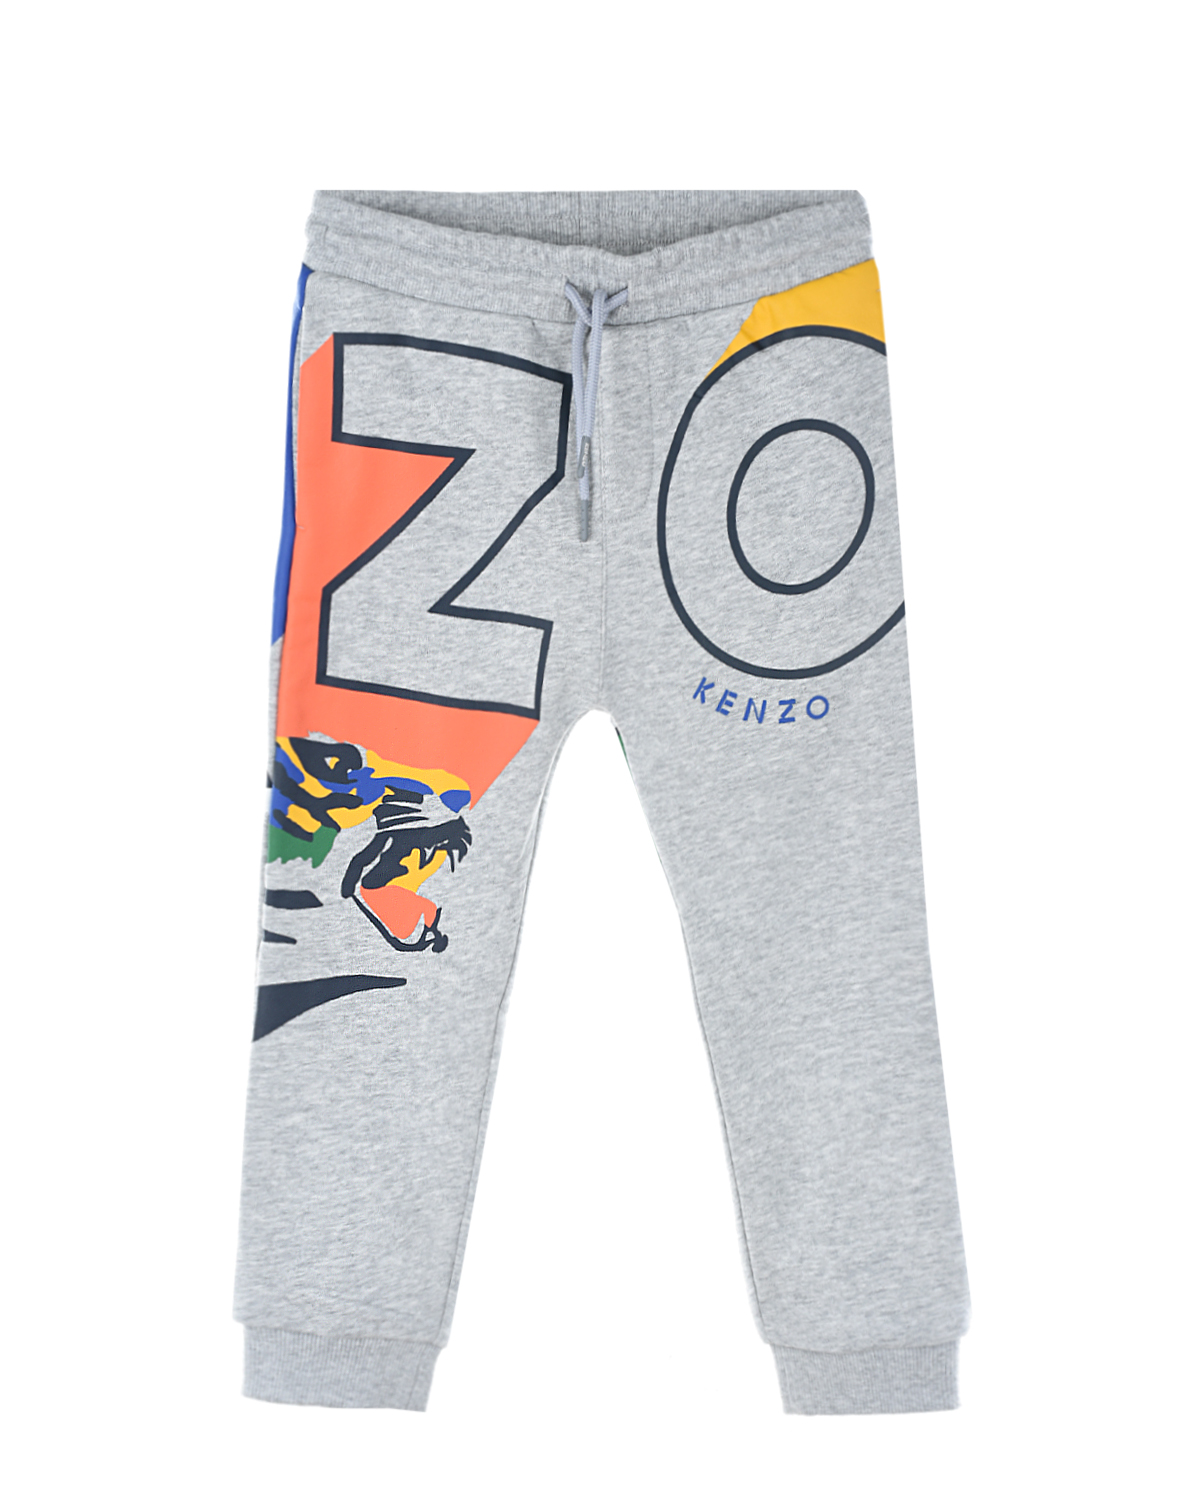 Где купить Спортивные брюки с ярким принтом KENZO детские Kenzo 